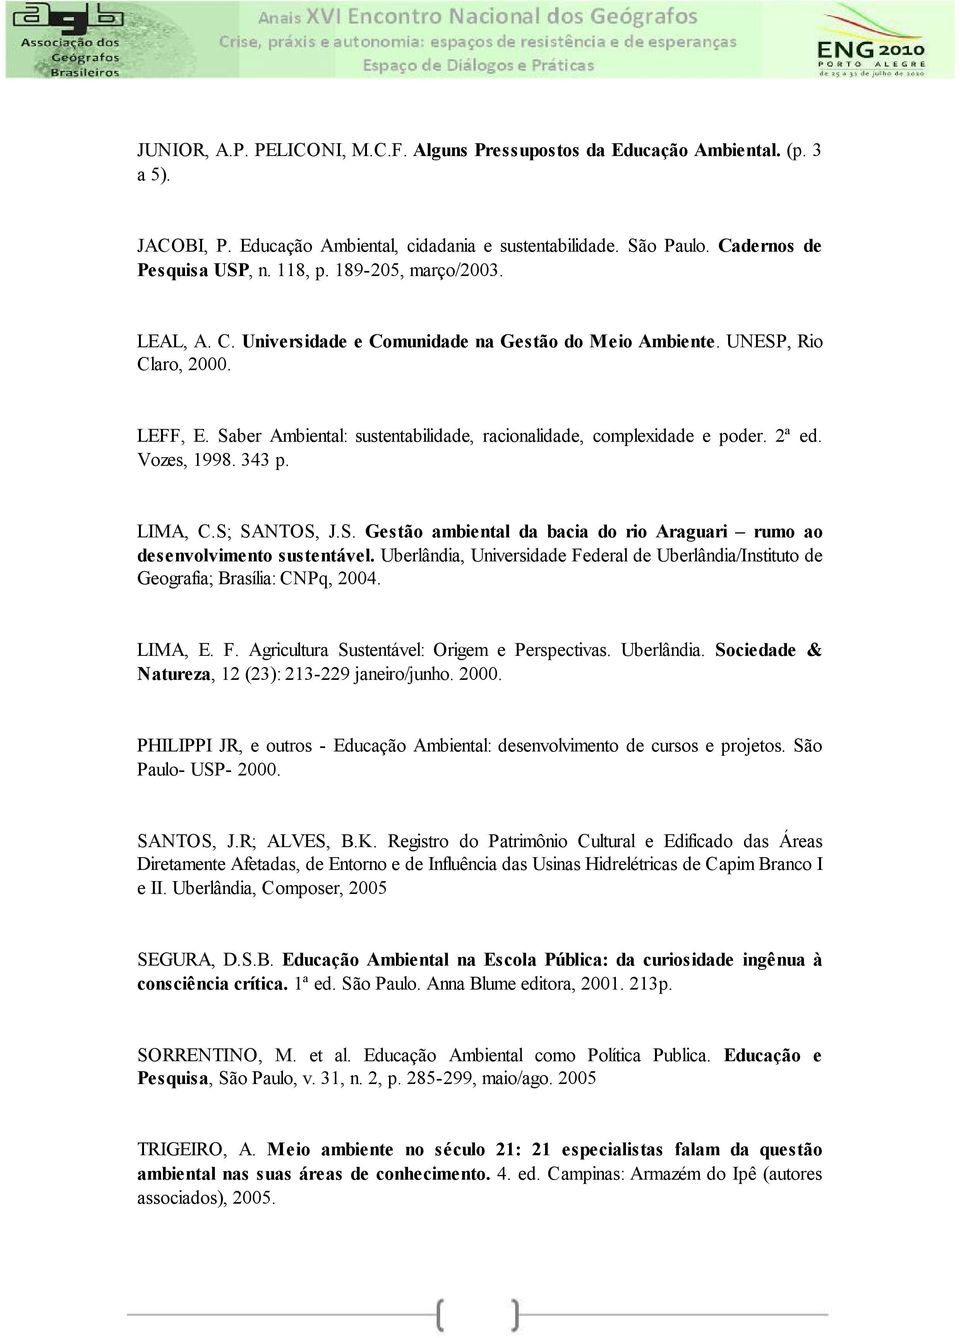 Vozes, 1998. 343 p. LIMA, C.S; SANTOS, J.S. Gestão ambiental da bacia do rio Araguari rumo ao desenvolvimento sustentável.